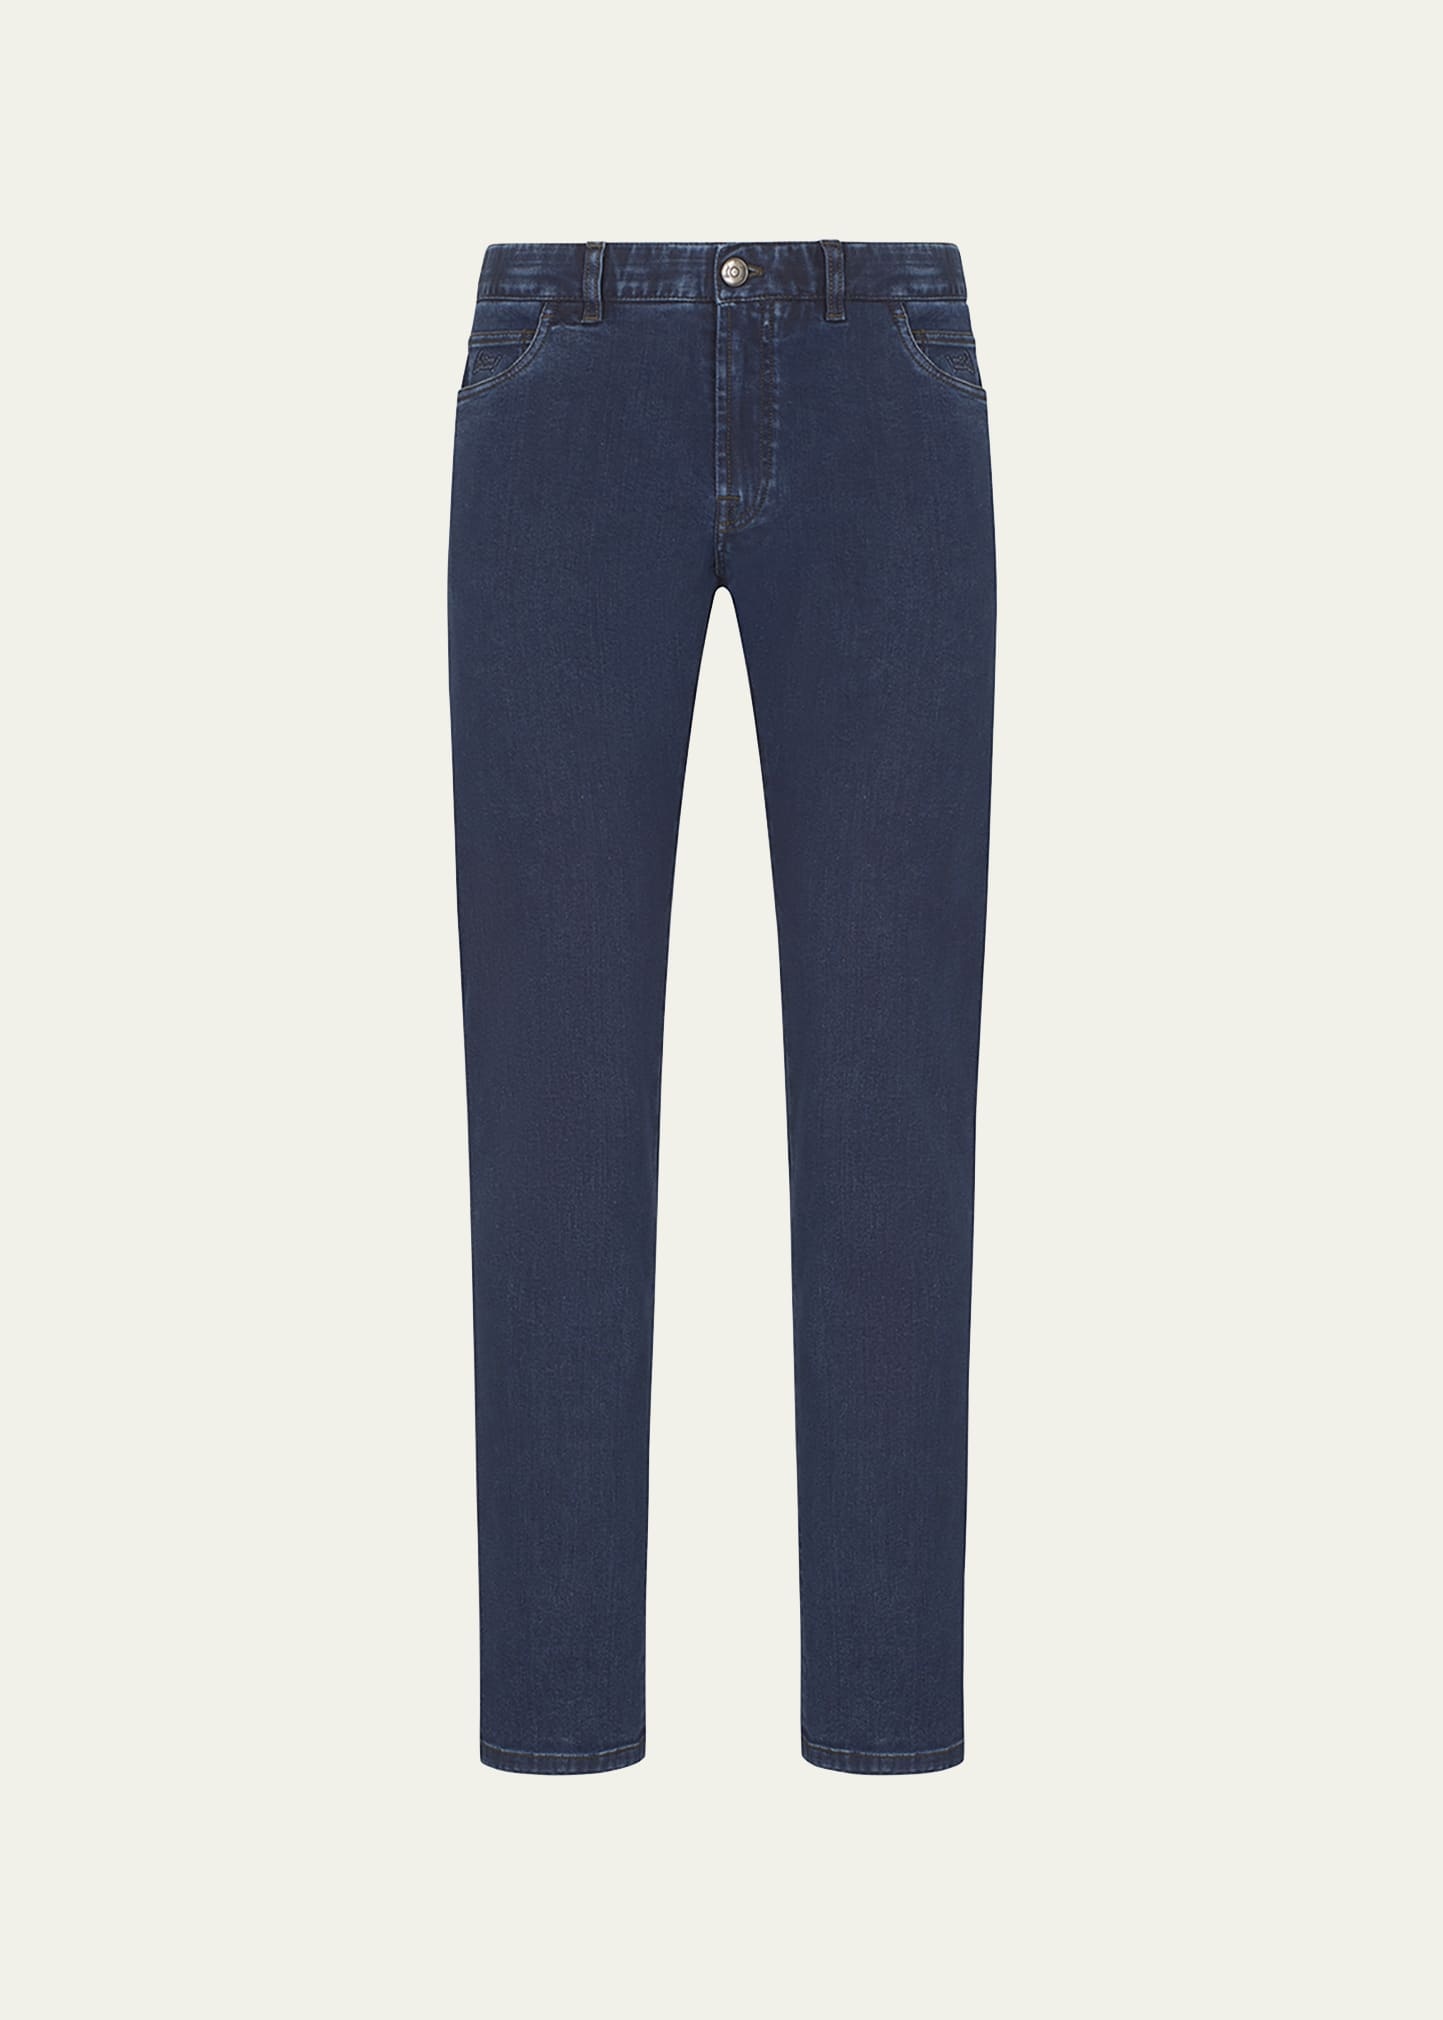 Men's 5-Pocket Denim Jeans - 1